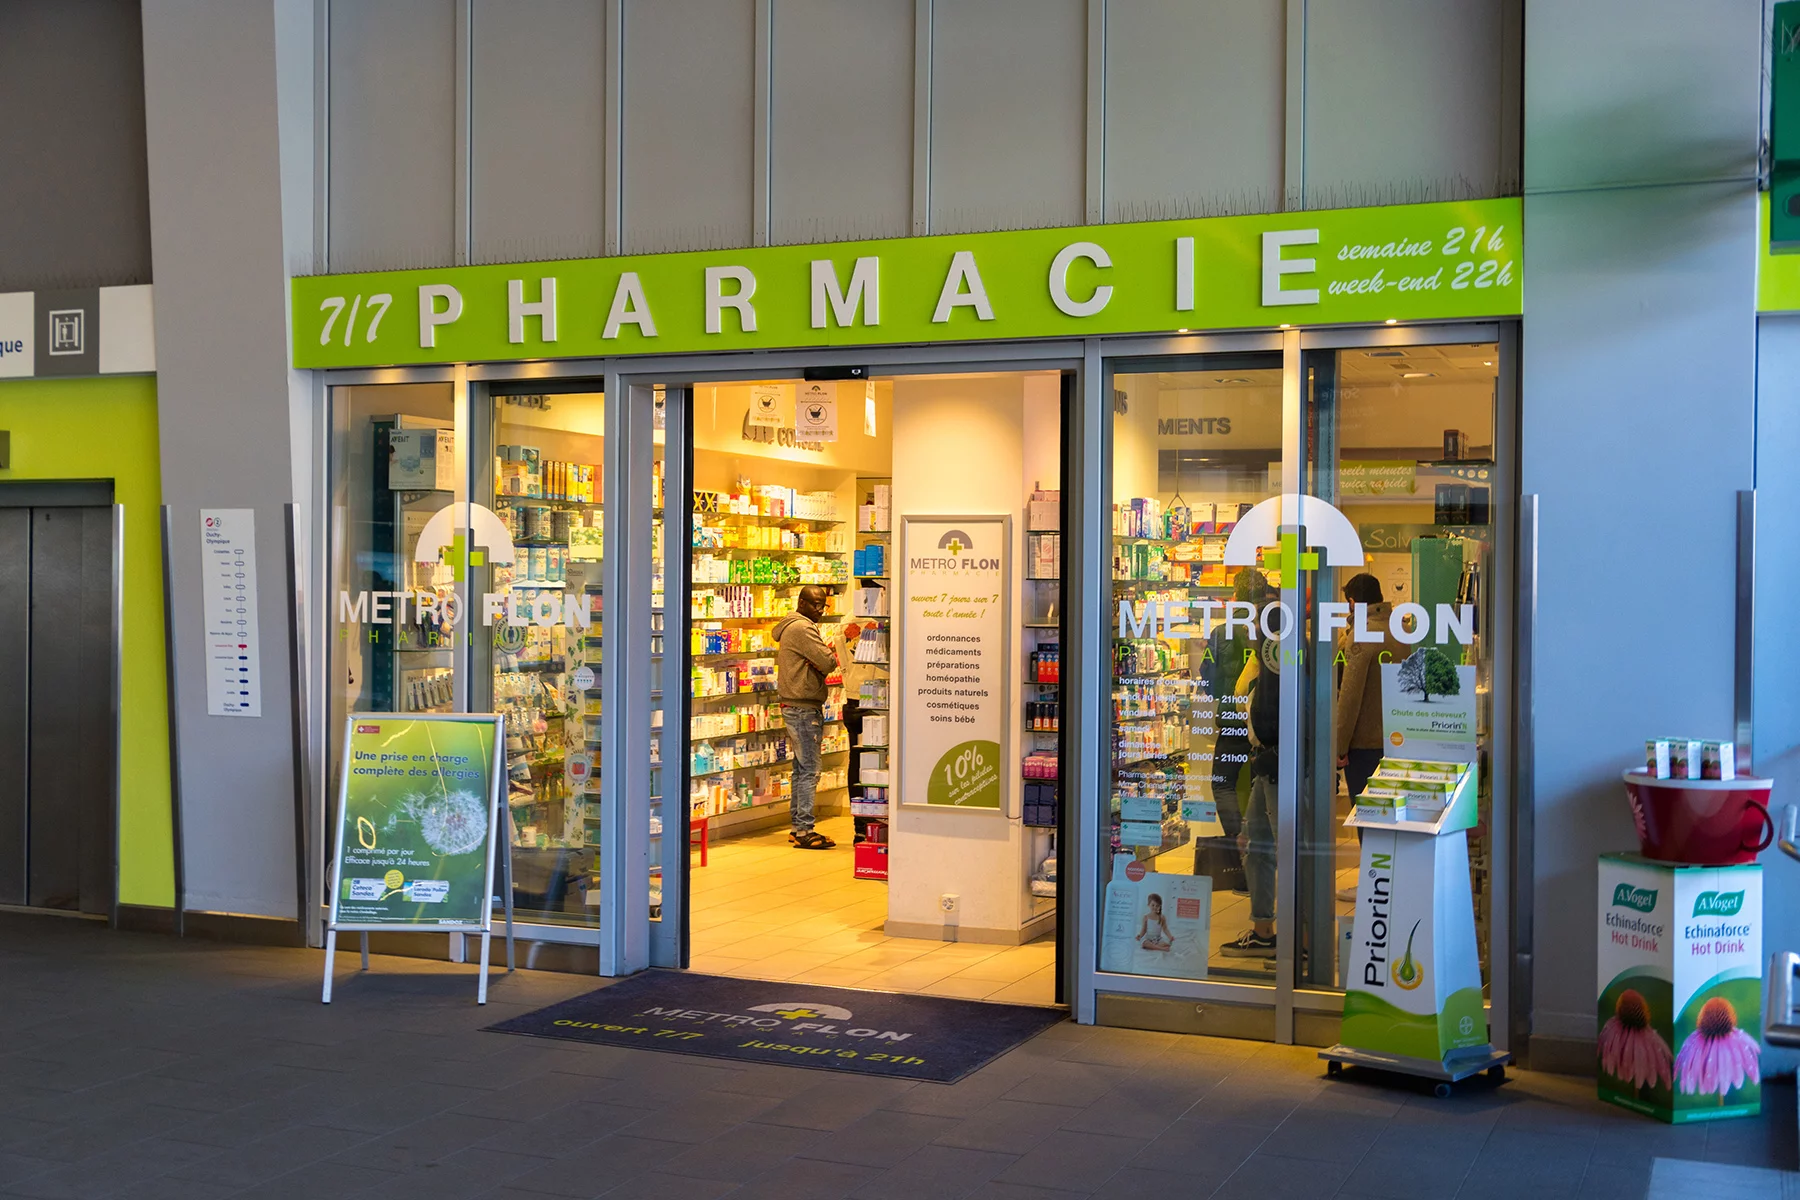 The front door of an open pharmacy in French-speaking Switzerland